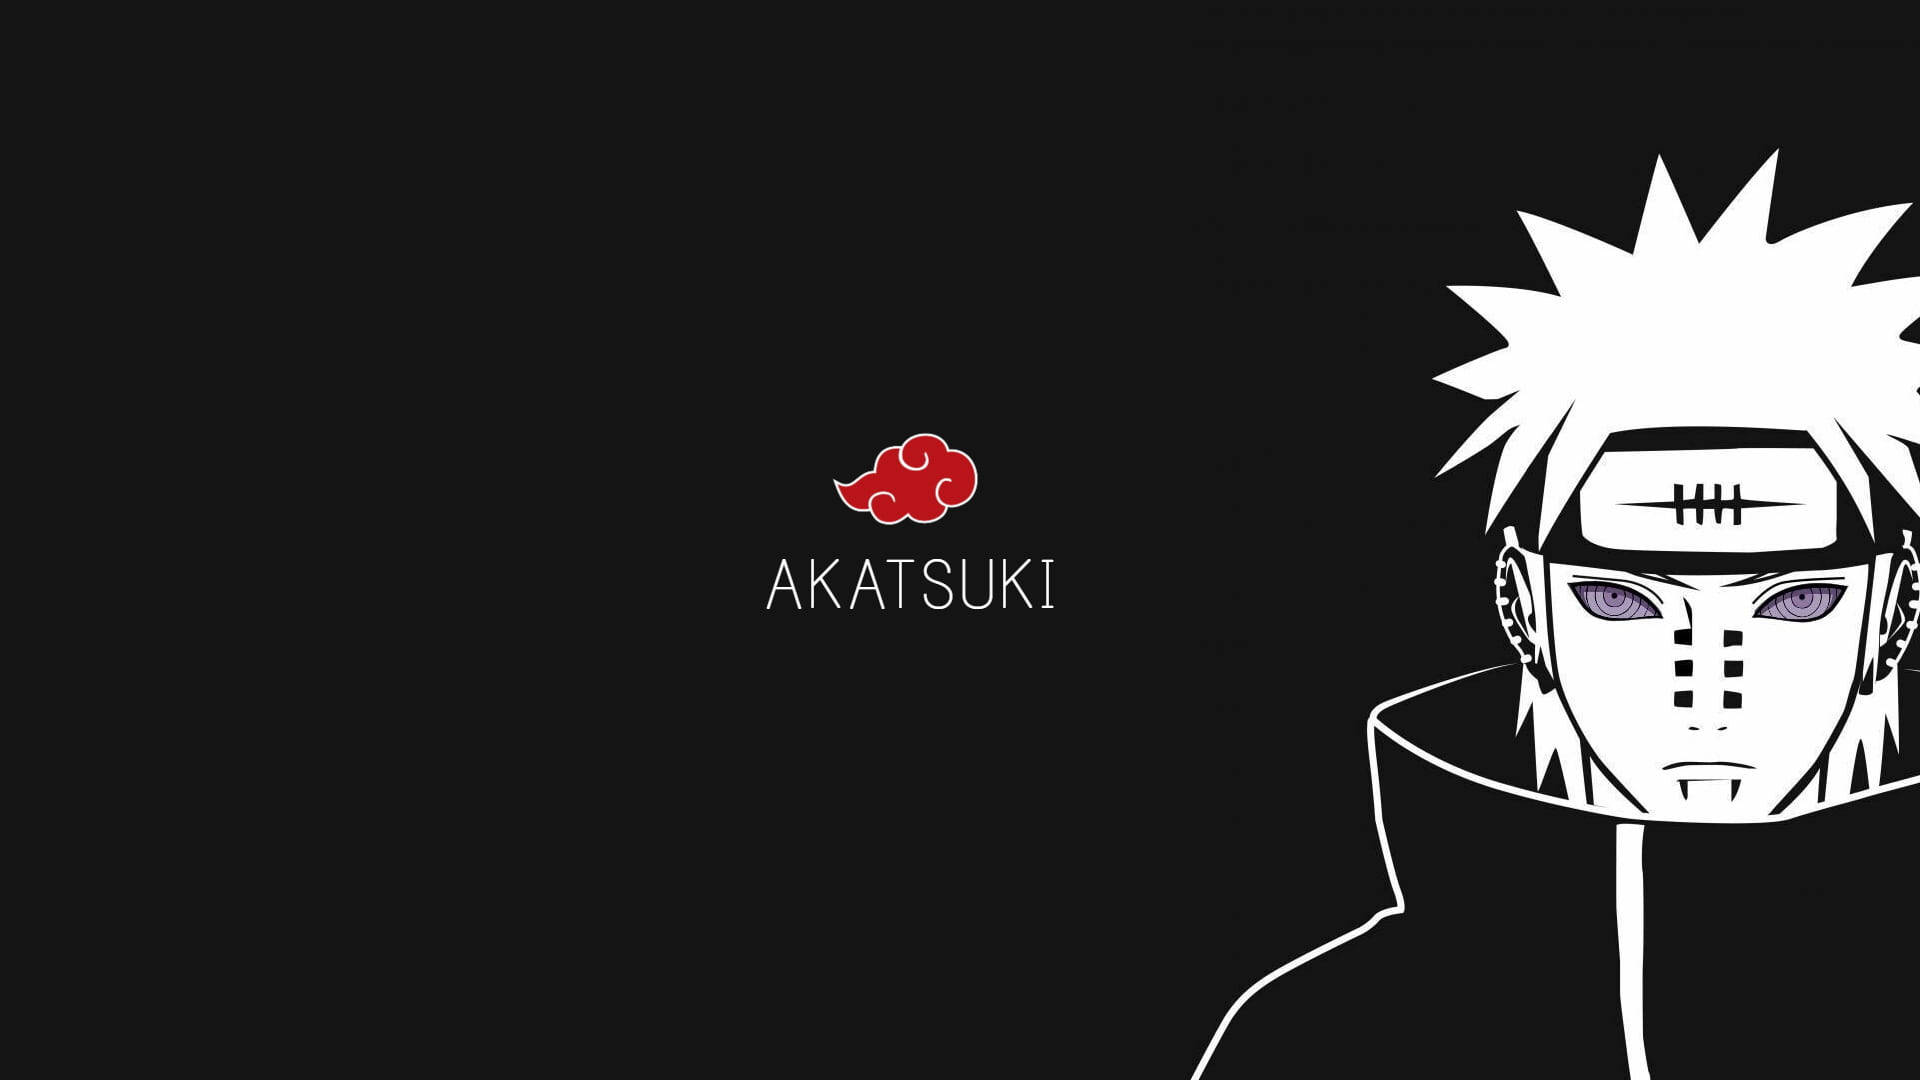 Akatsuki Logo And Nagato